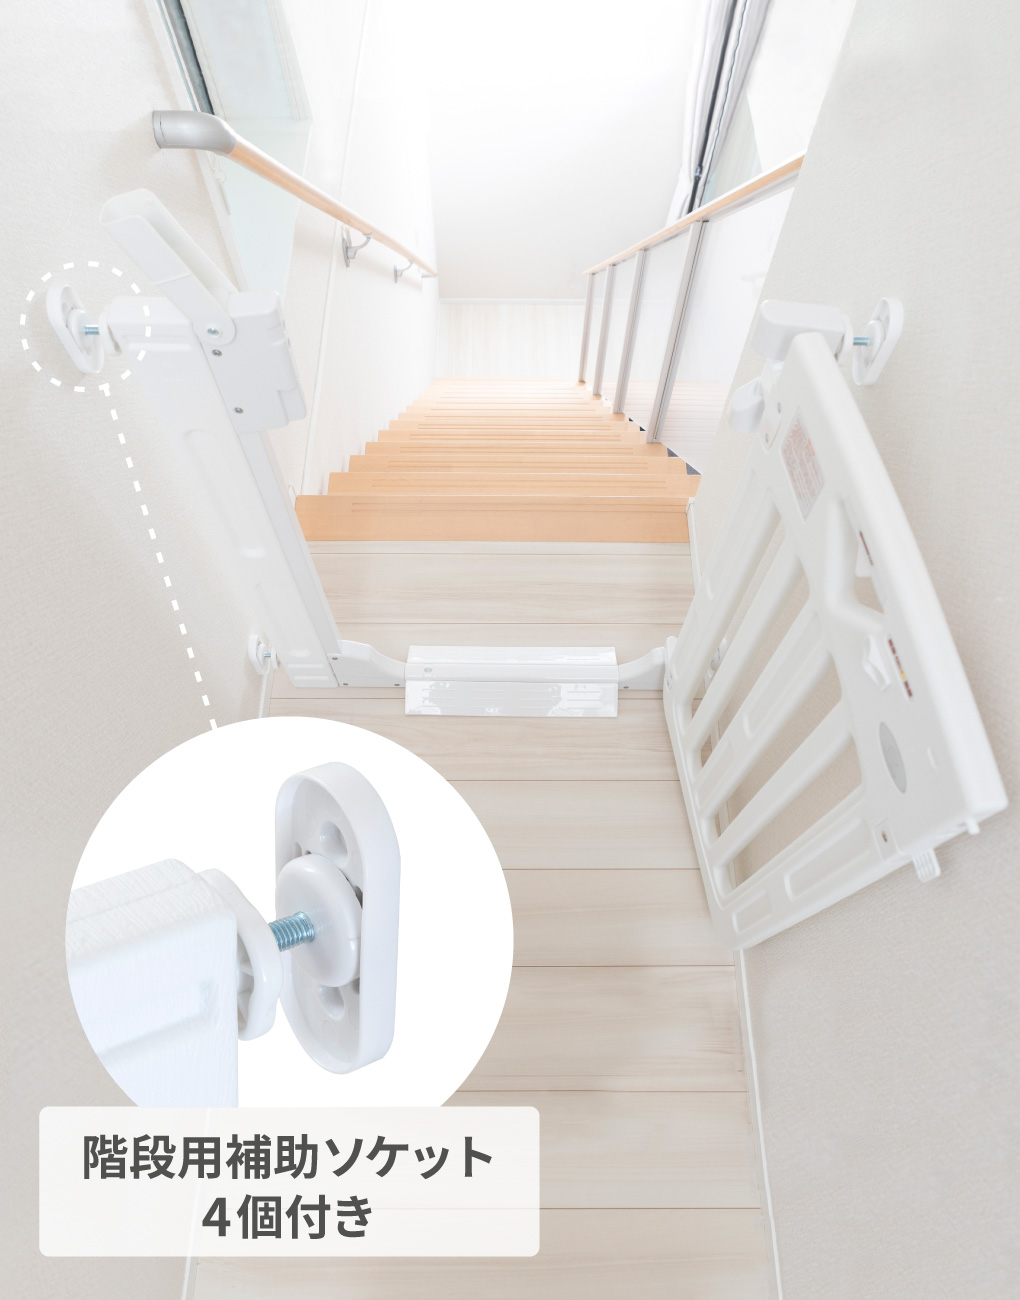 7020円 評判 日本育児 ベビーゲート スマートゲイトプラス 階段上設置